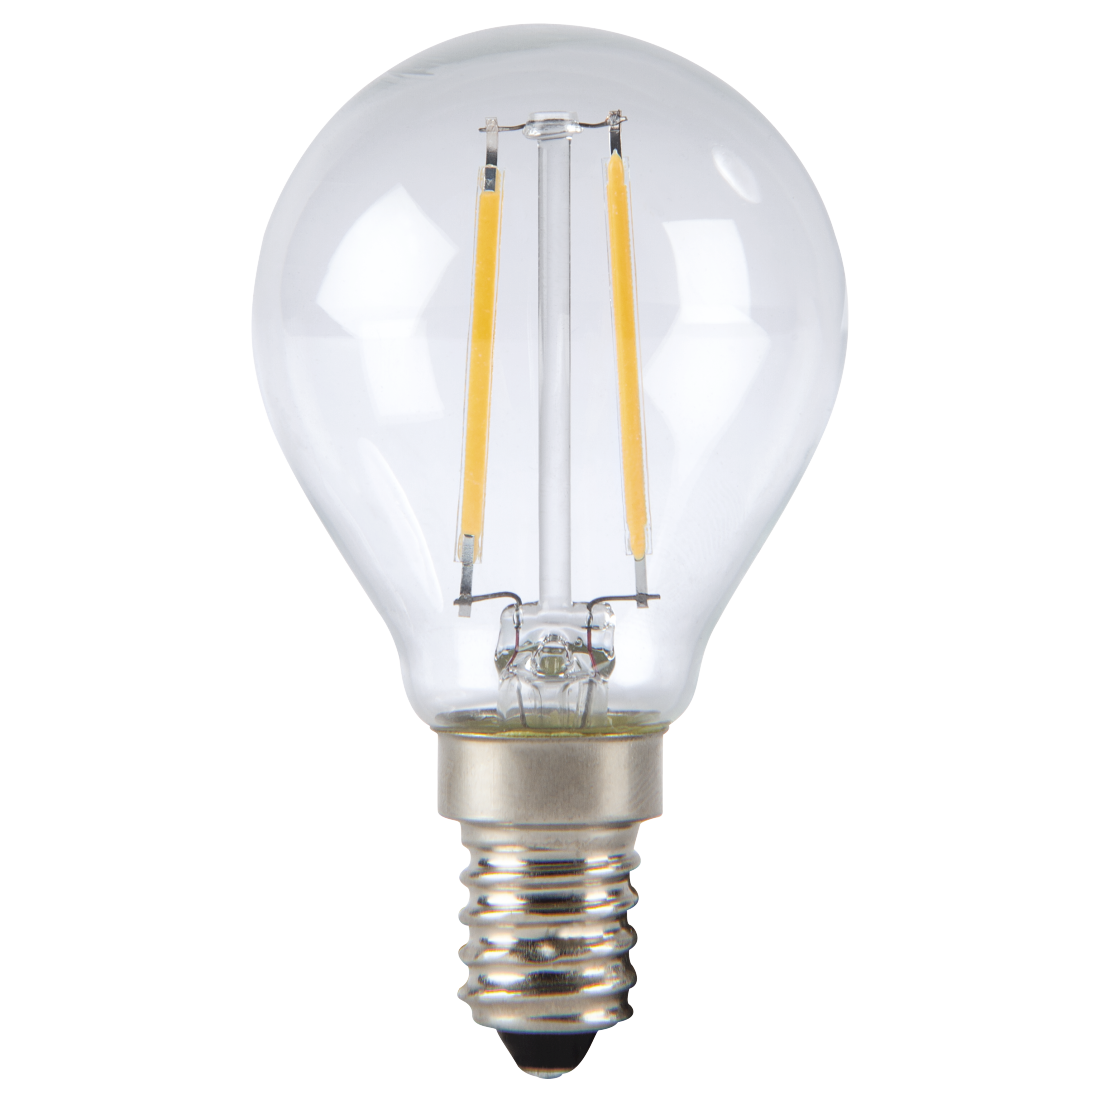 abx High-Res Image - Xavax, Ampoule filament à LED, E14, 250lm rempl. amp. sphérique 25W, blc chd